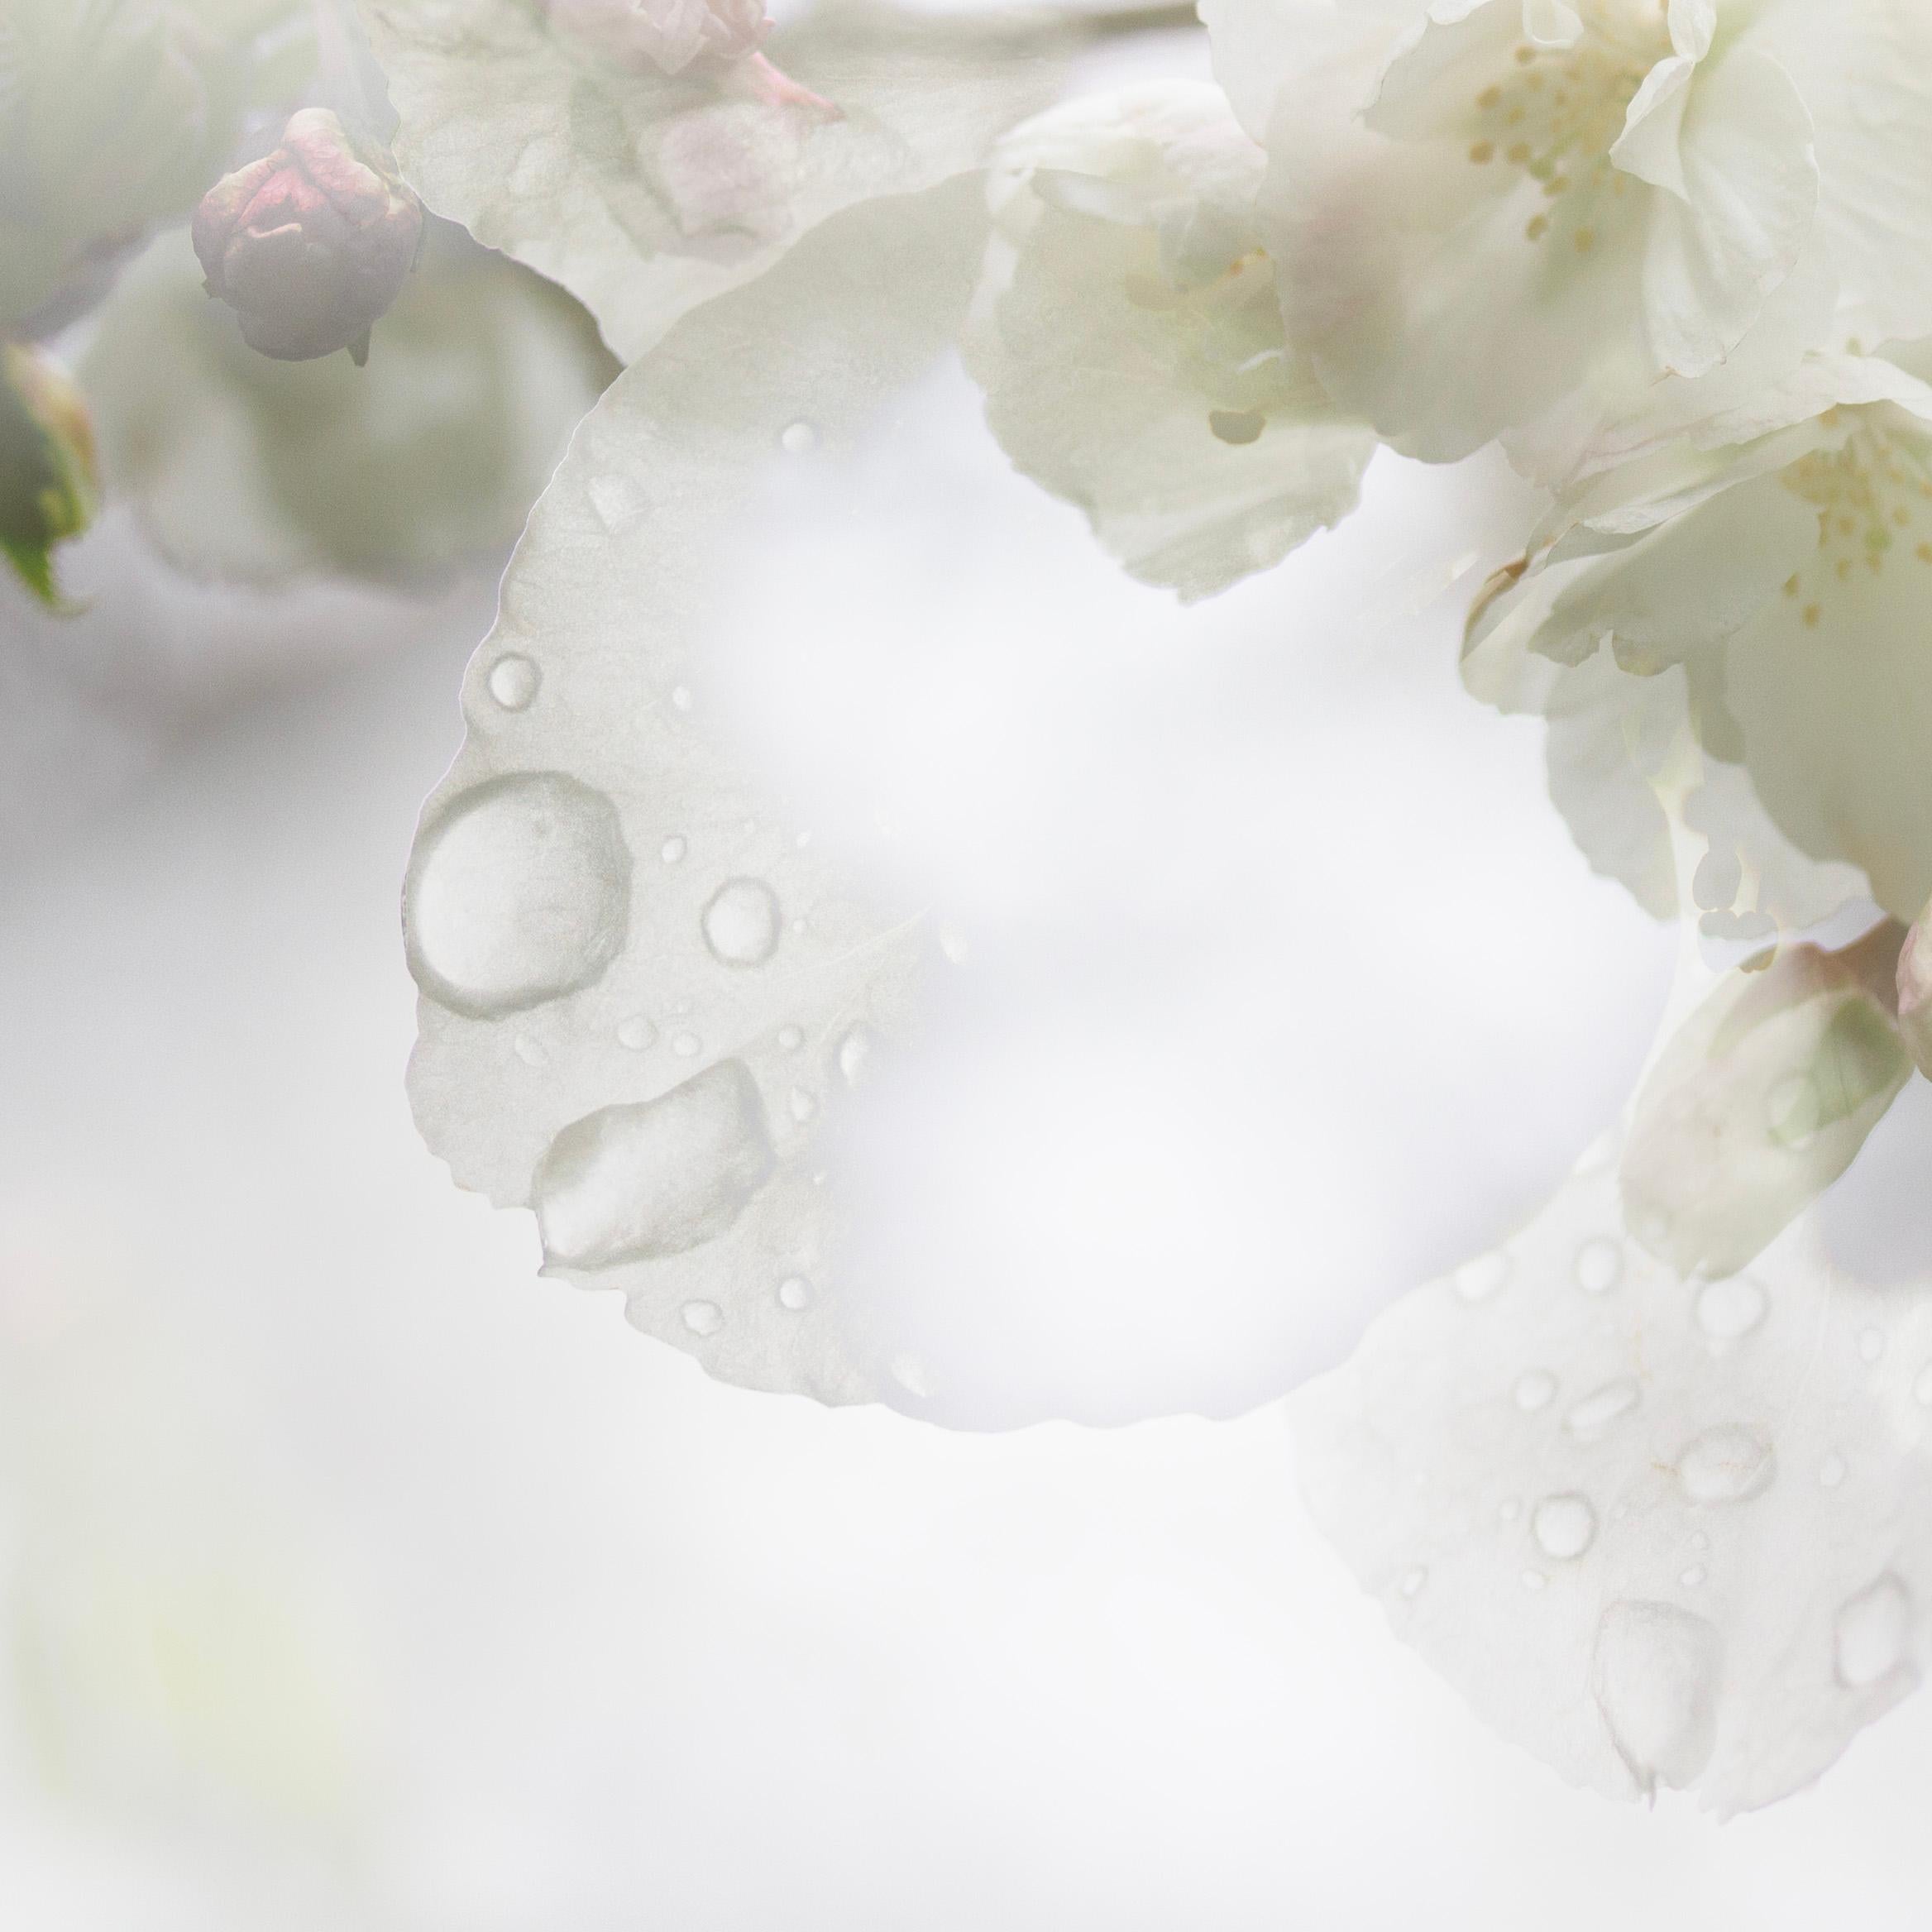 Spring Rain' Foto Kirschblüte Sakura Blumen grün weiß Nature (Grau), Abstract Photograph, von Sophia Milligan